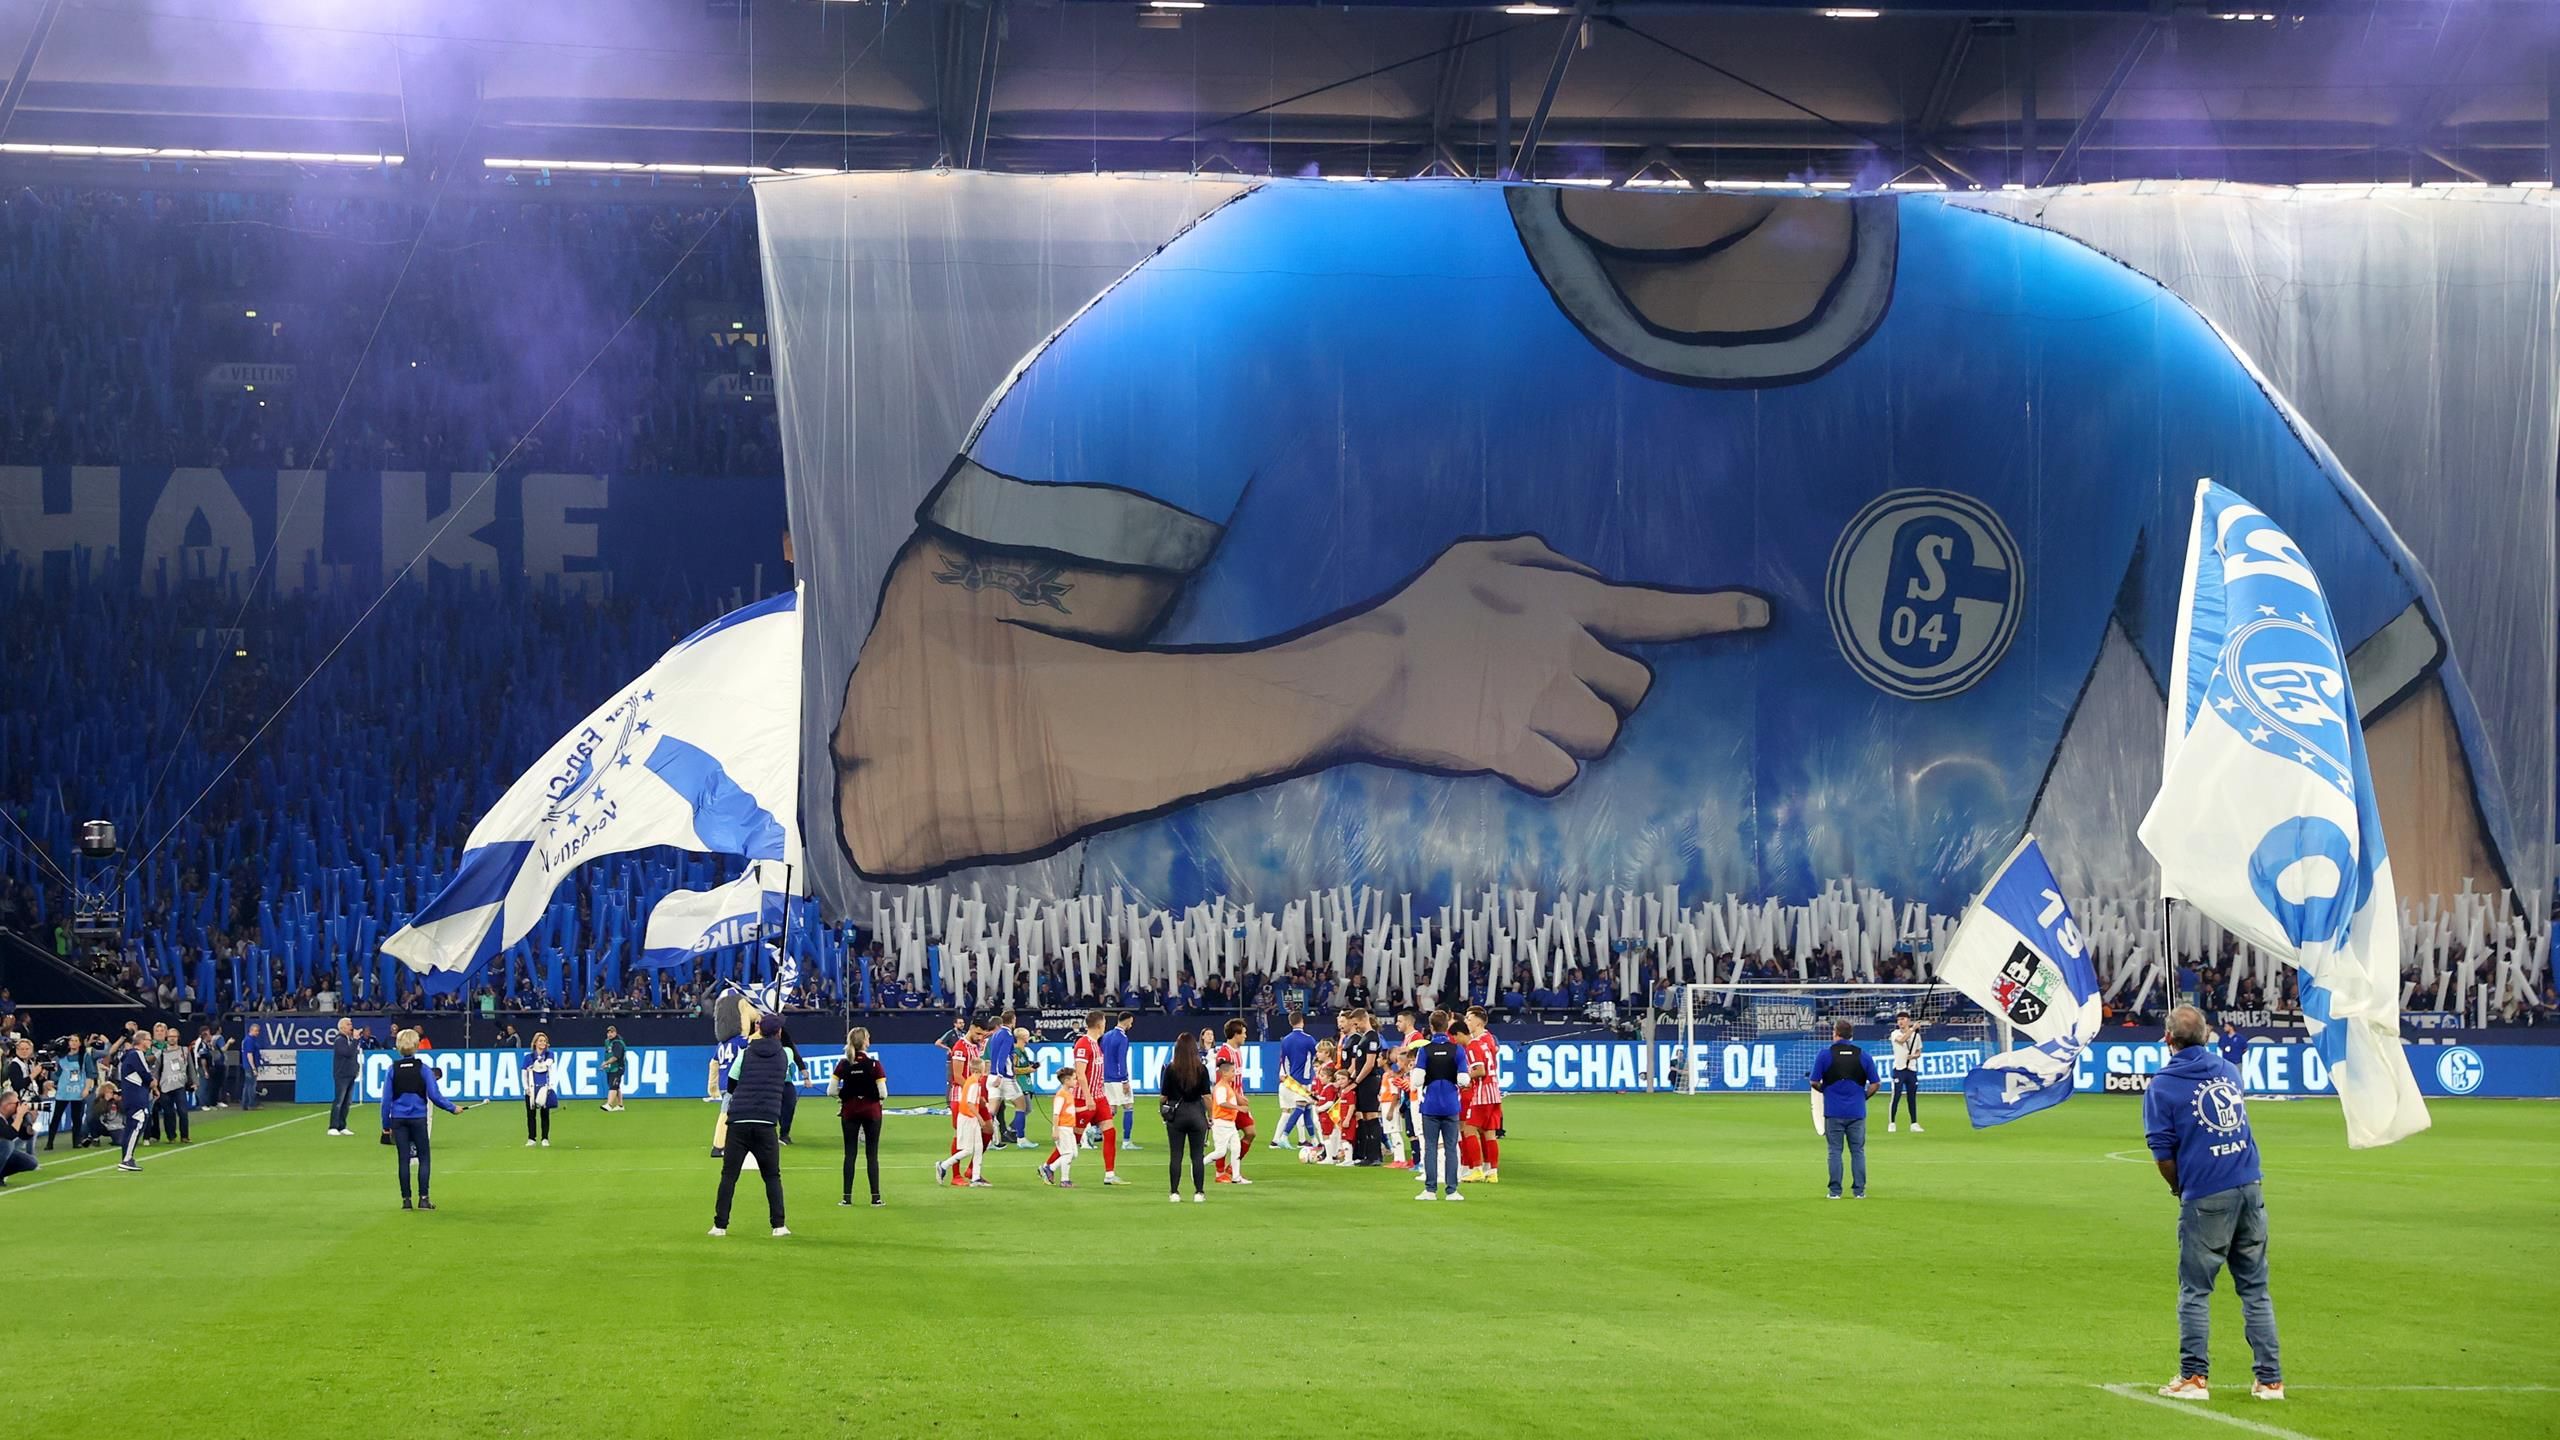 FC Schalke - Panne bei Fan-Choreo im Heimspiel gegen SC Freiburg Polizei kündigt Konsequenzen an